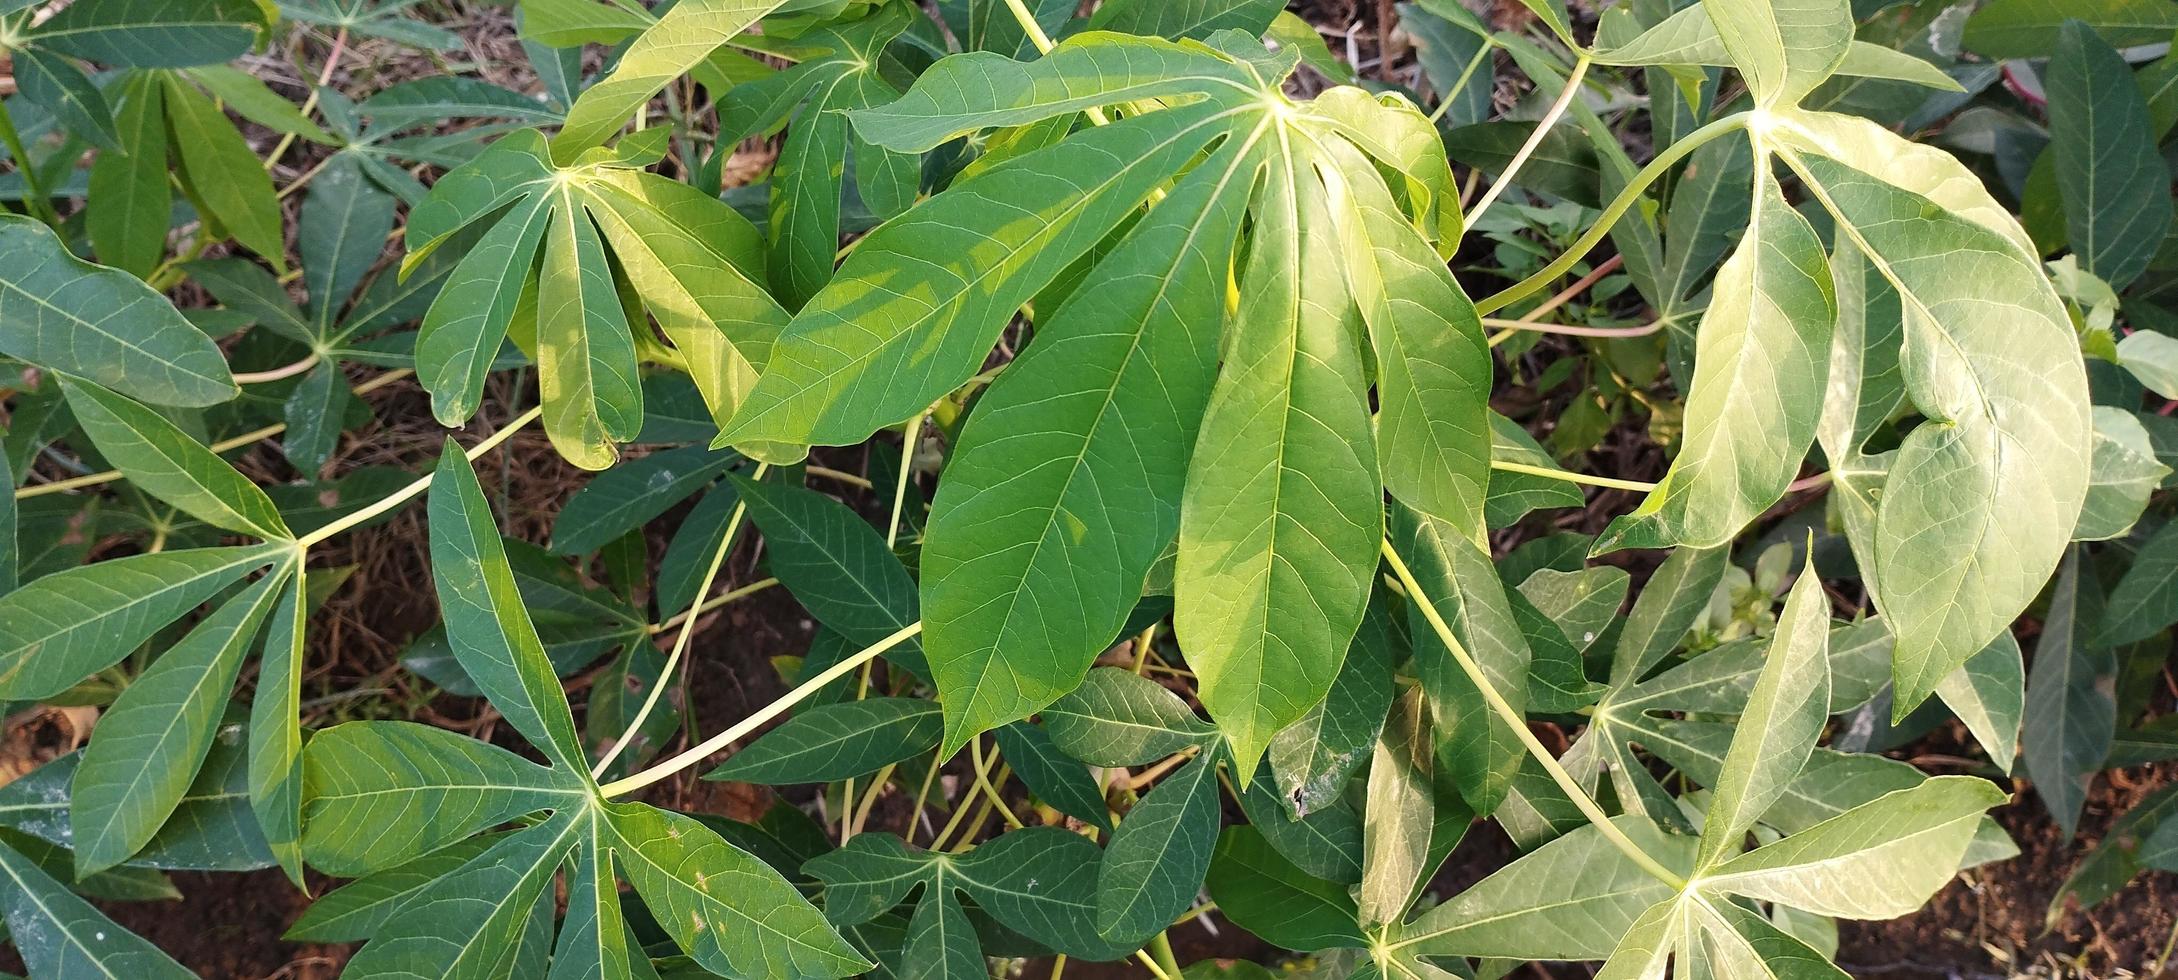 las hojas de ambon se usan generalmente como alimento o vegetales en indonesia foto